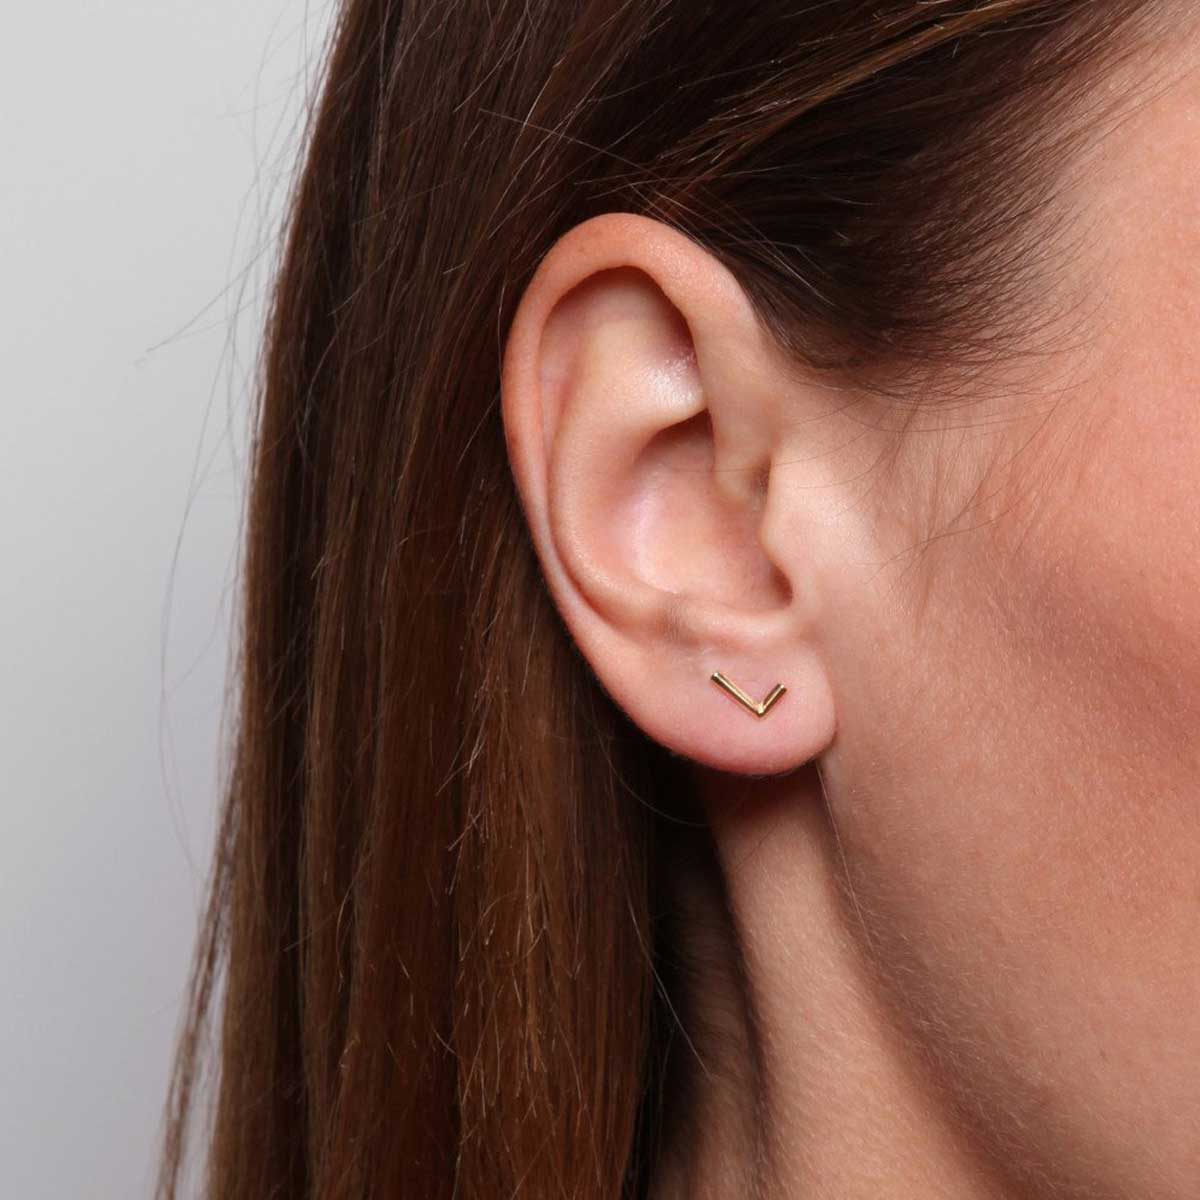 L shaped earrings